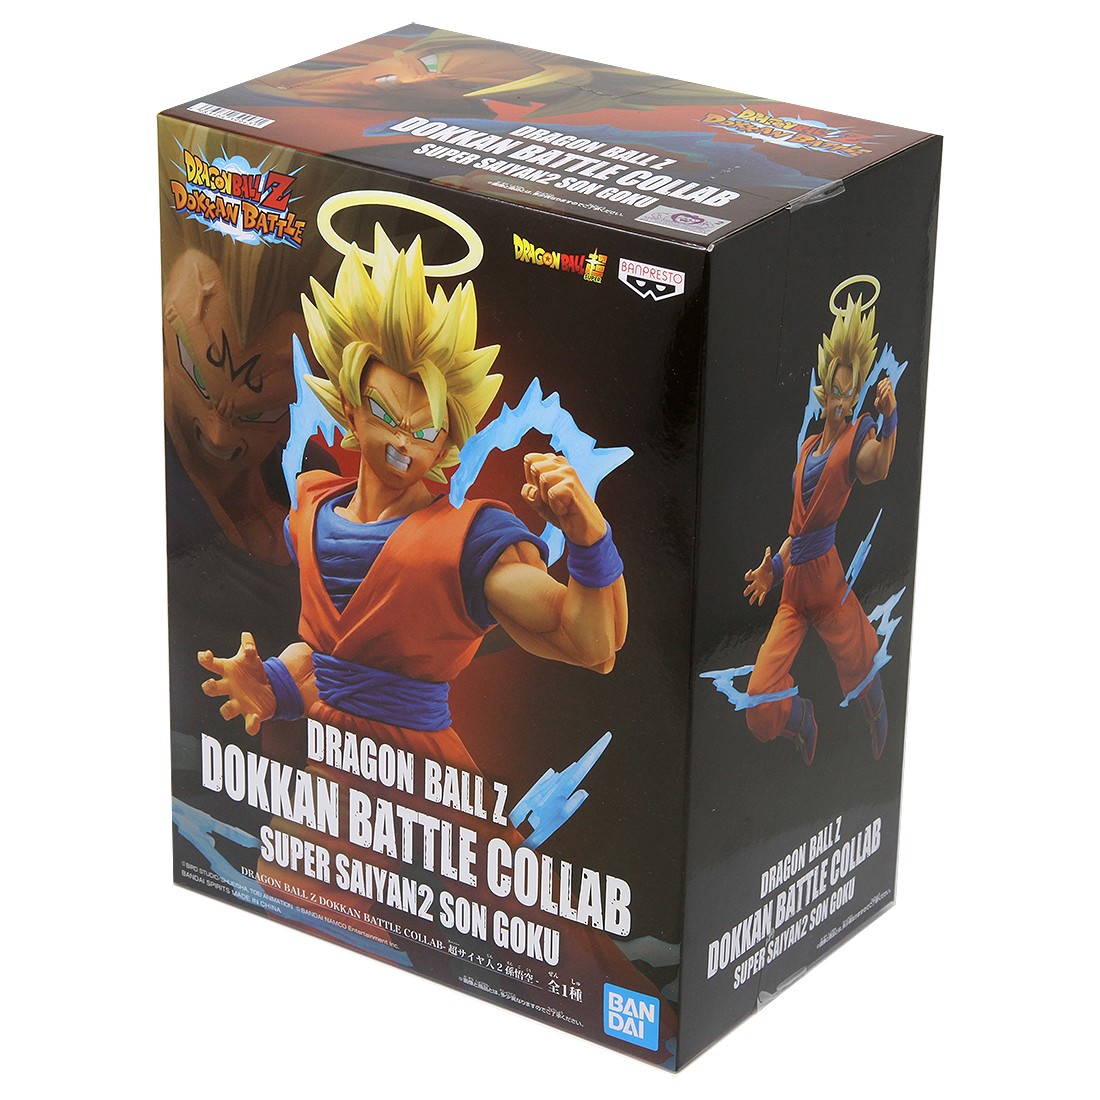 Banpresto Dragon Ball Z Dokkan Battle Collab Super Saiyan 2 Goku